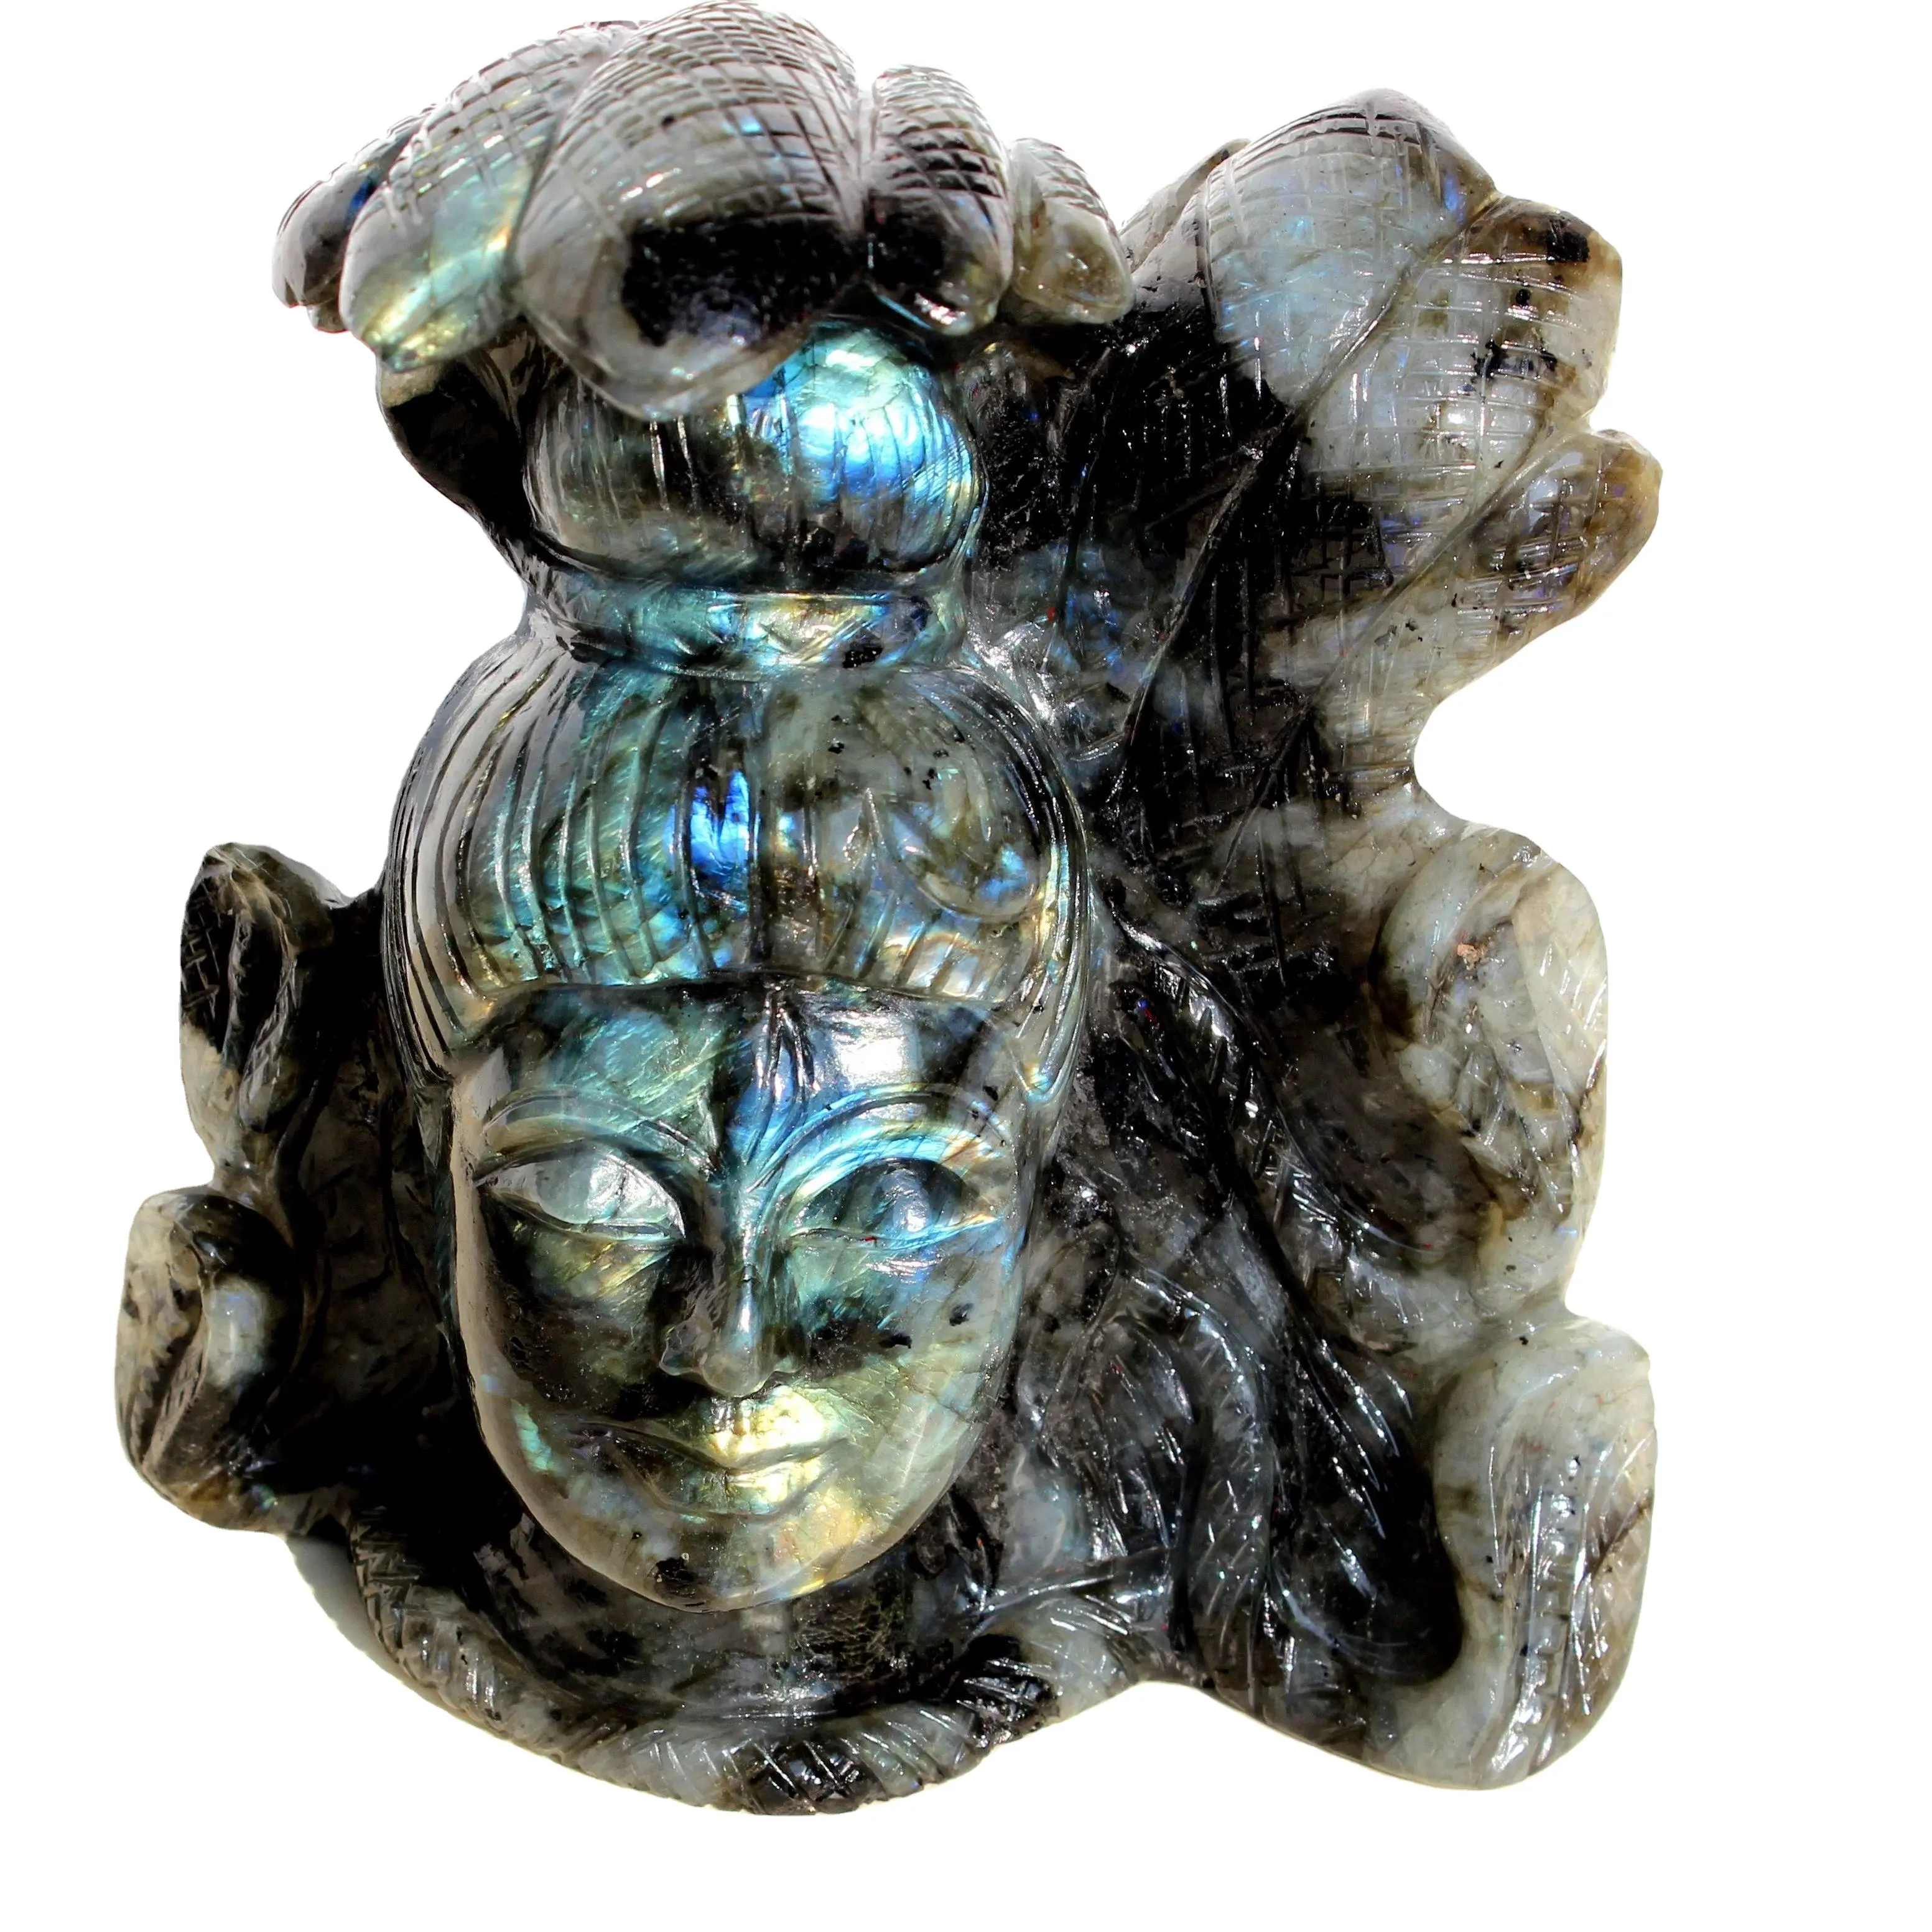 Labradorite escultura de entalhar mão, shiva estatueta shiva cristal de cura estátua natural rura gems índia